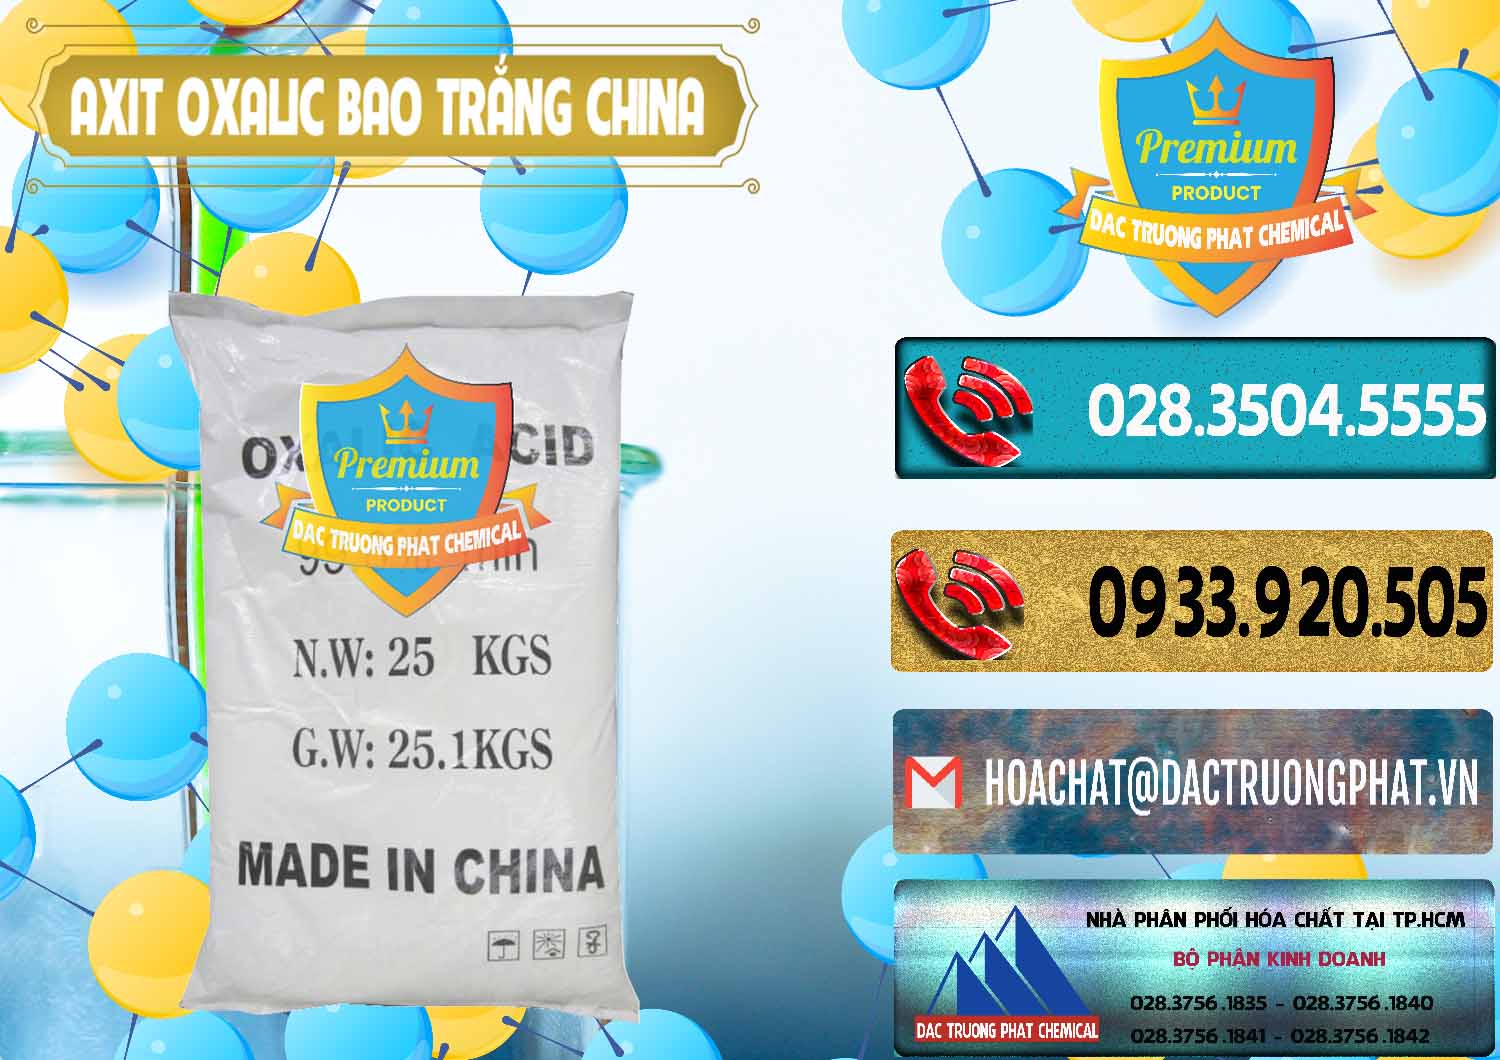 Cty phân phối và bán Acid Oxalic – Axit Oxalic 99.6% Bao Trắng Trung Quốc China - 0270 - Công ty kinh doanh ( phân phối ) hóa chất tại TP.HCM - hoachatdetnhuom.com